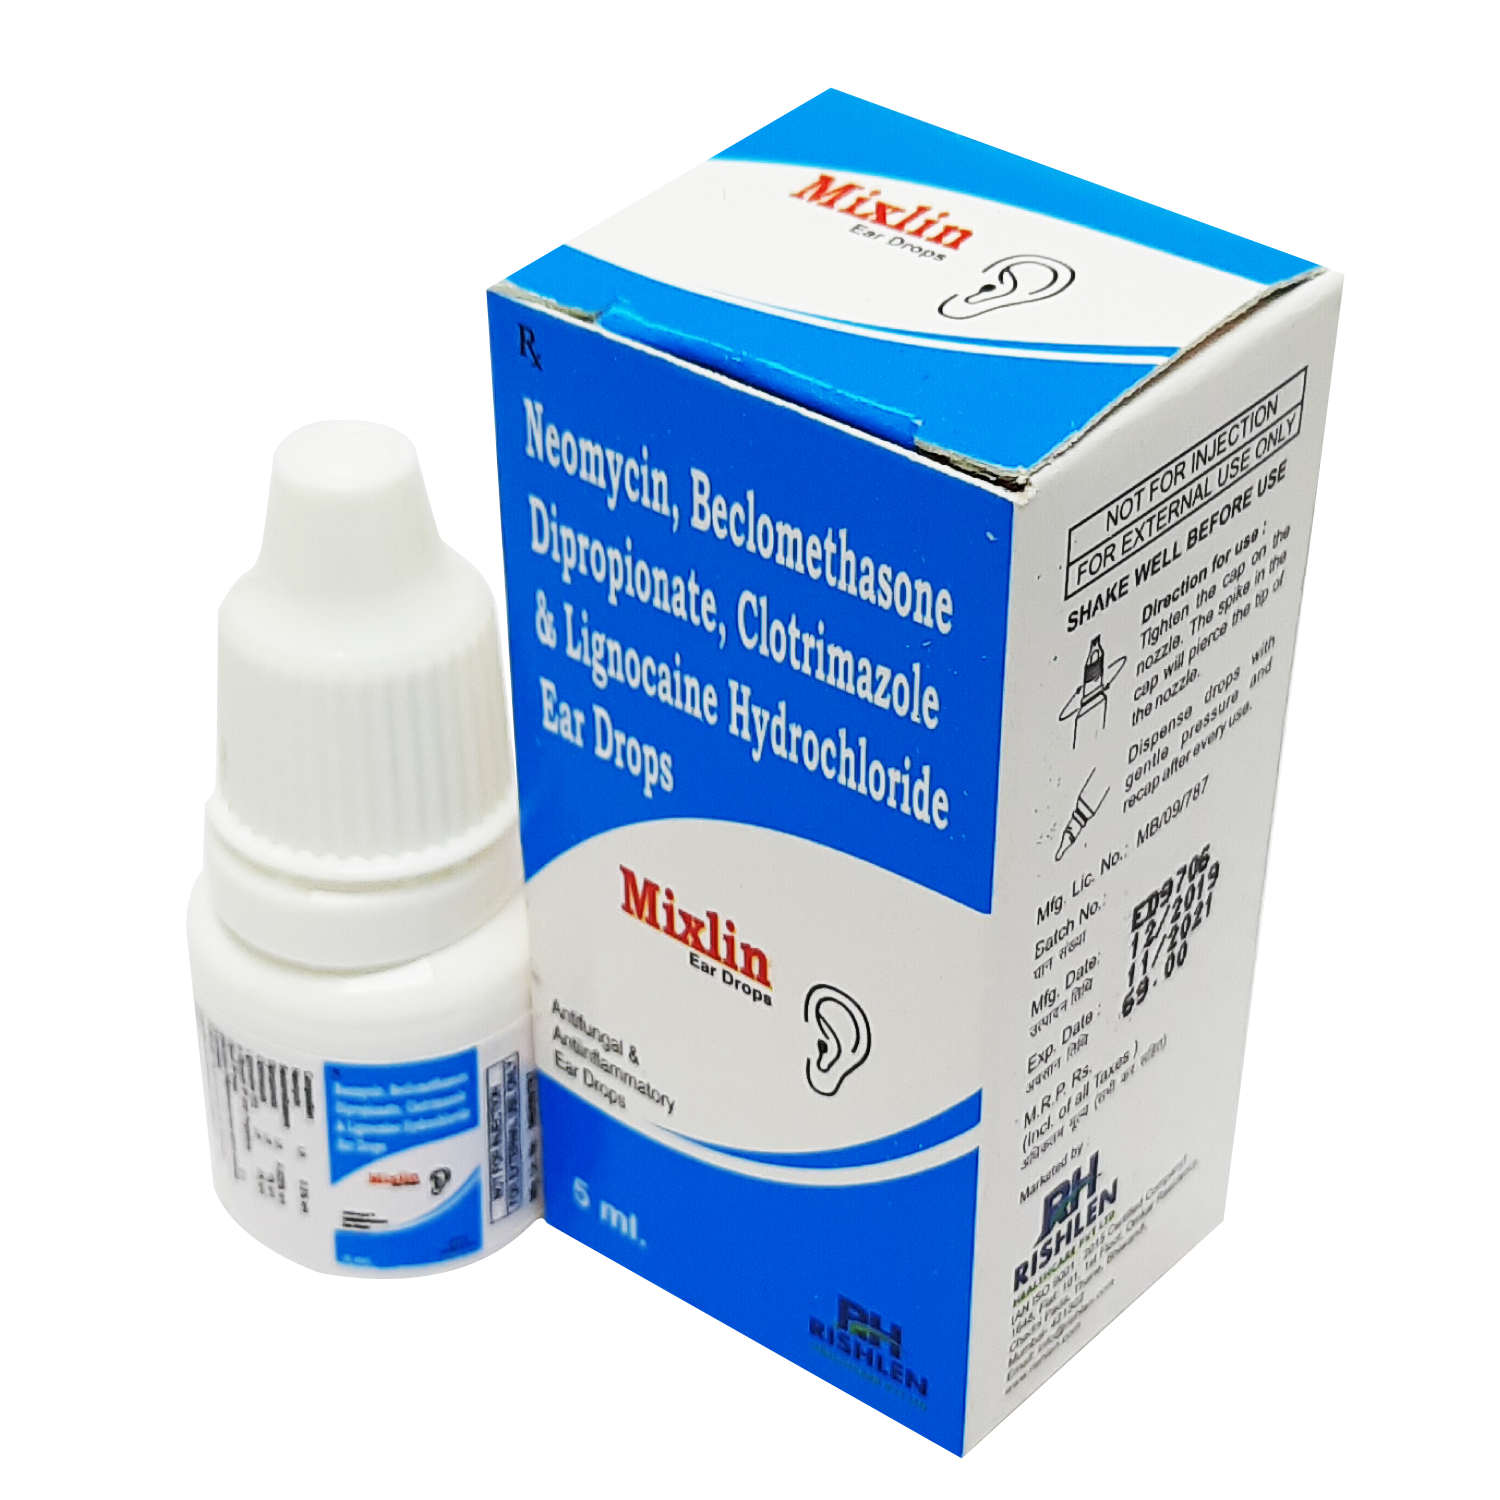 Mixlin, Neomycin 0.5% w/v+Beclomethasone Dipropionate 0.025% w/v clotrimazole 1 % w/v + Lignocaine HCL 2% w/v